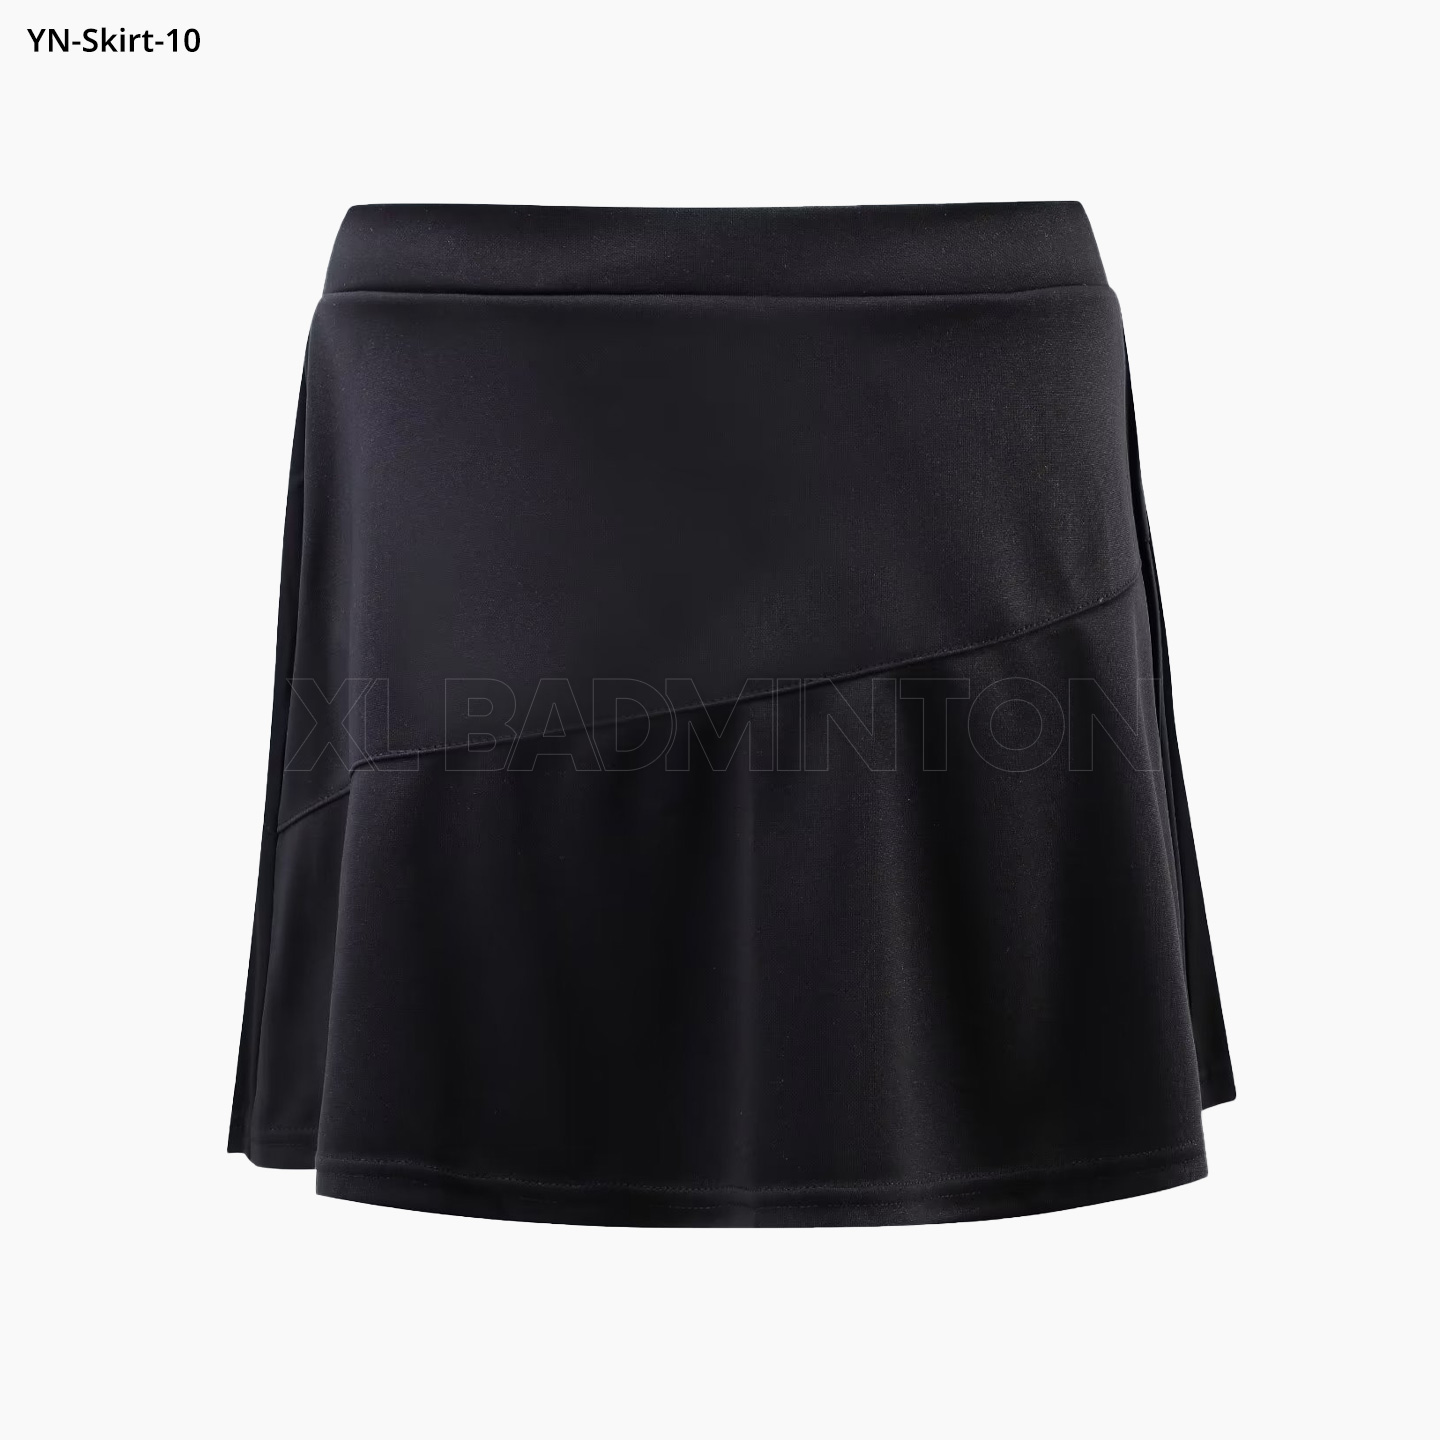 yn-skirt-10-black-3